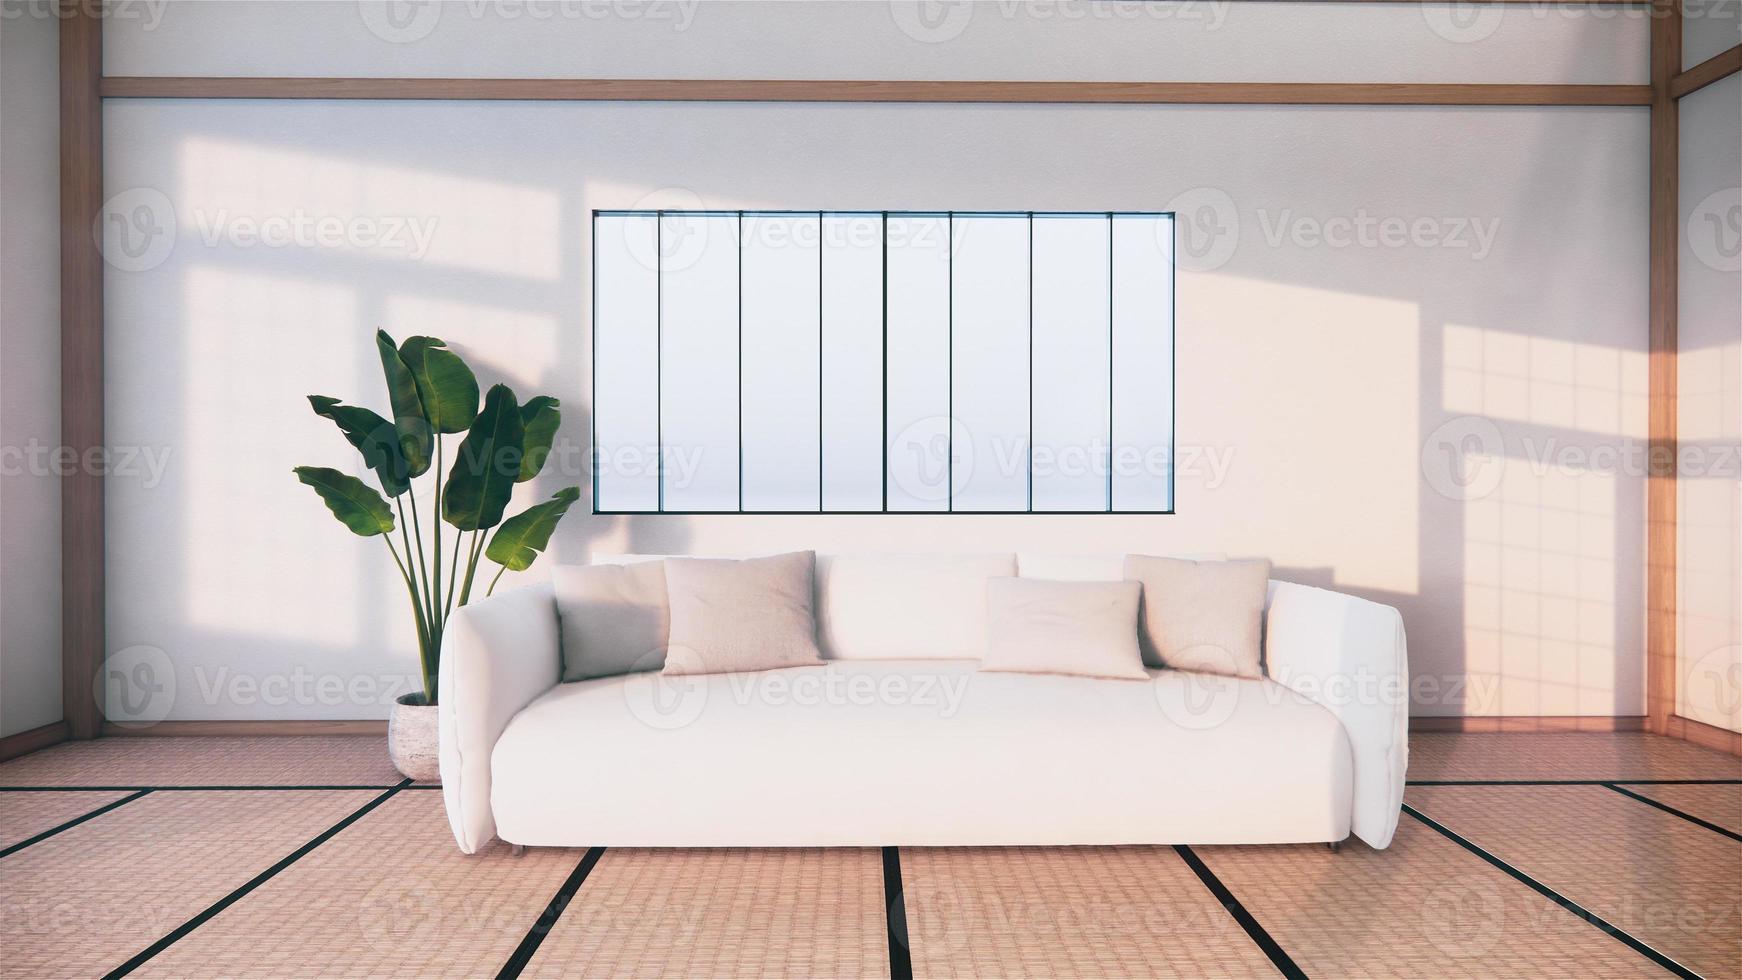 canapé de style japonais sur la chambre japon et la toile de fond blanche offre une fenêtre pour l'édition. rendu 3d photo